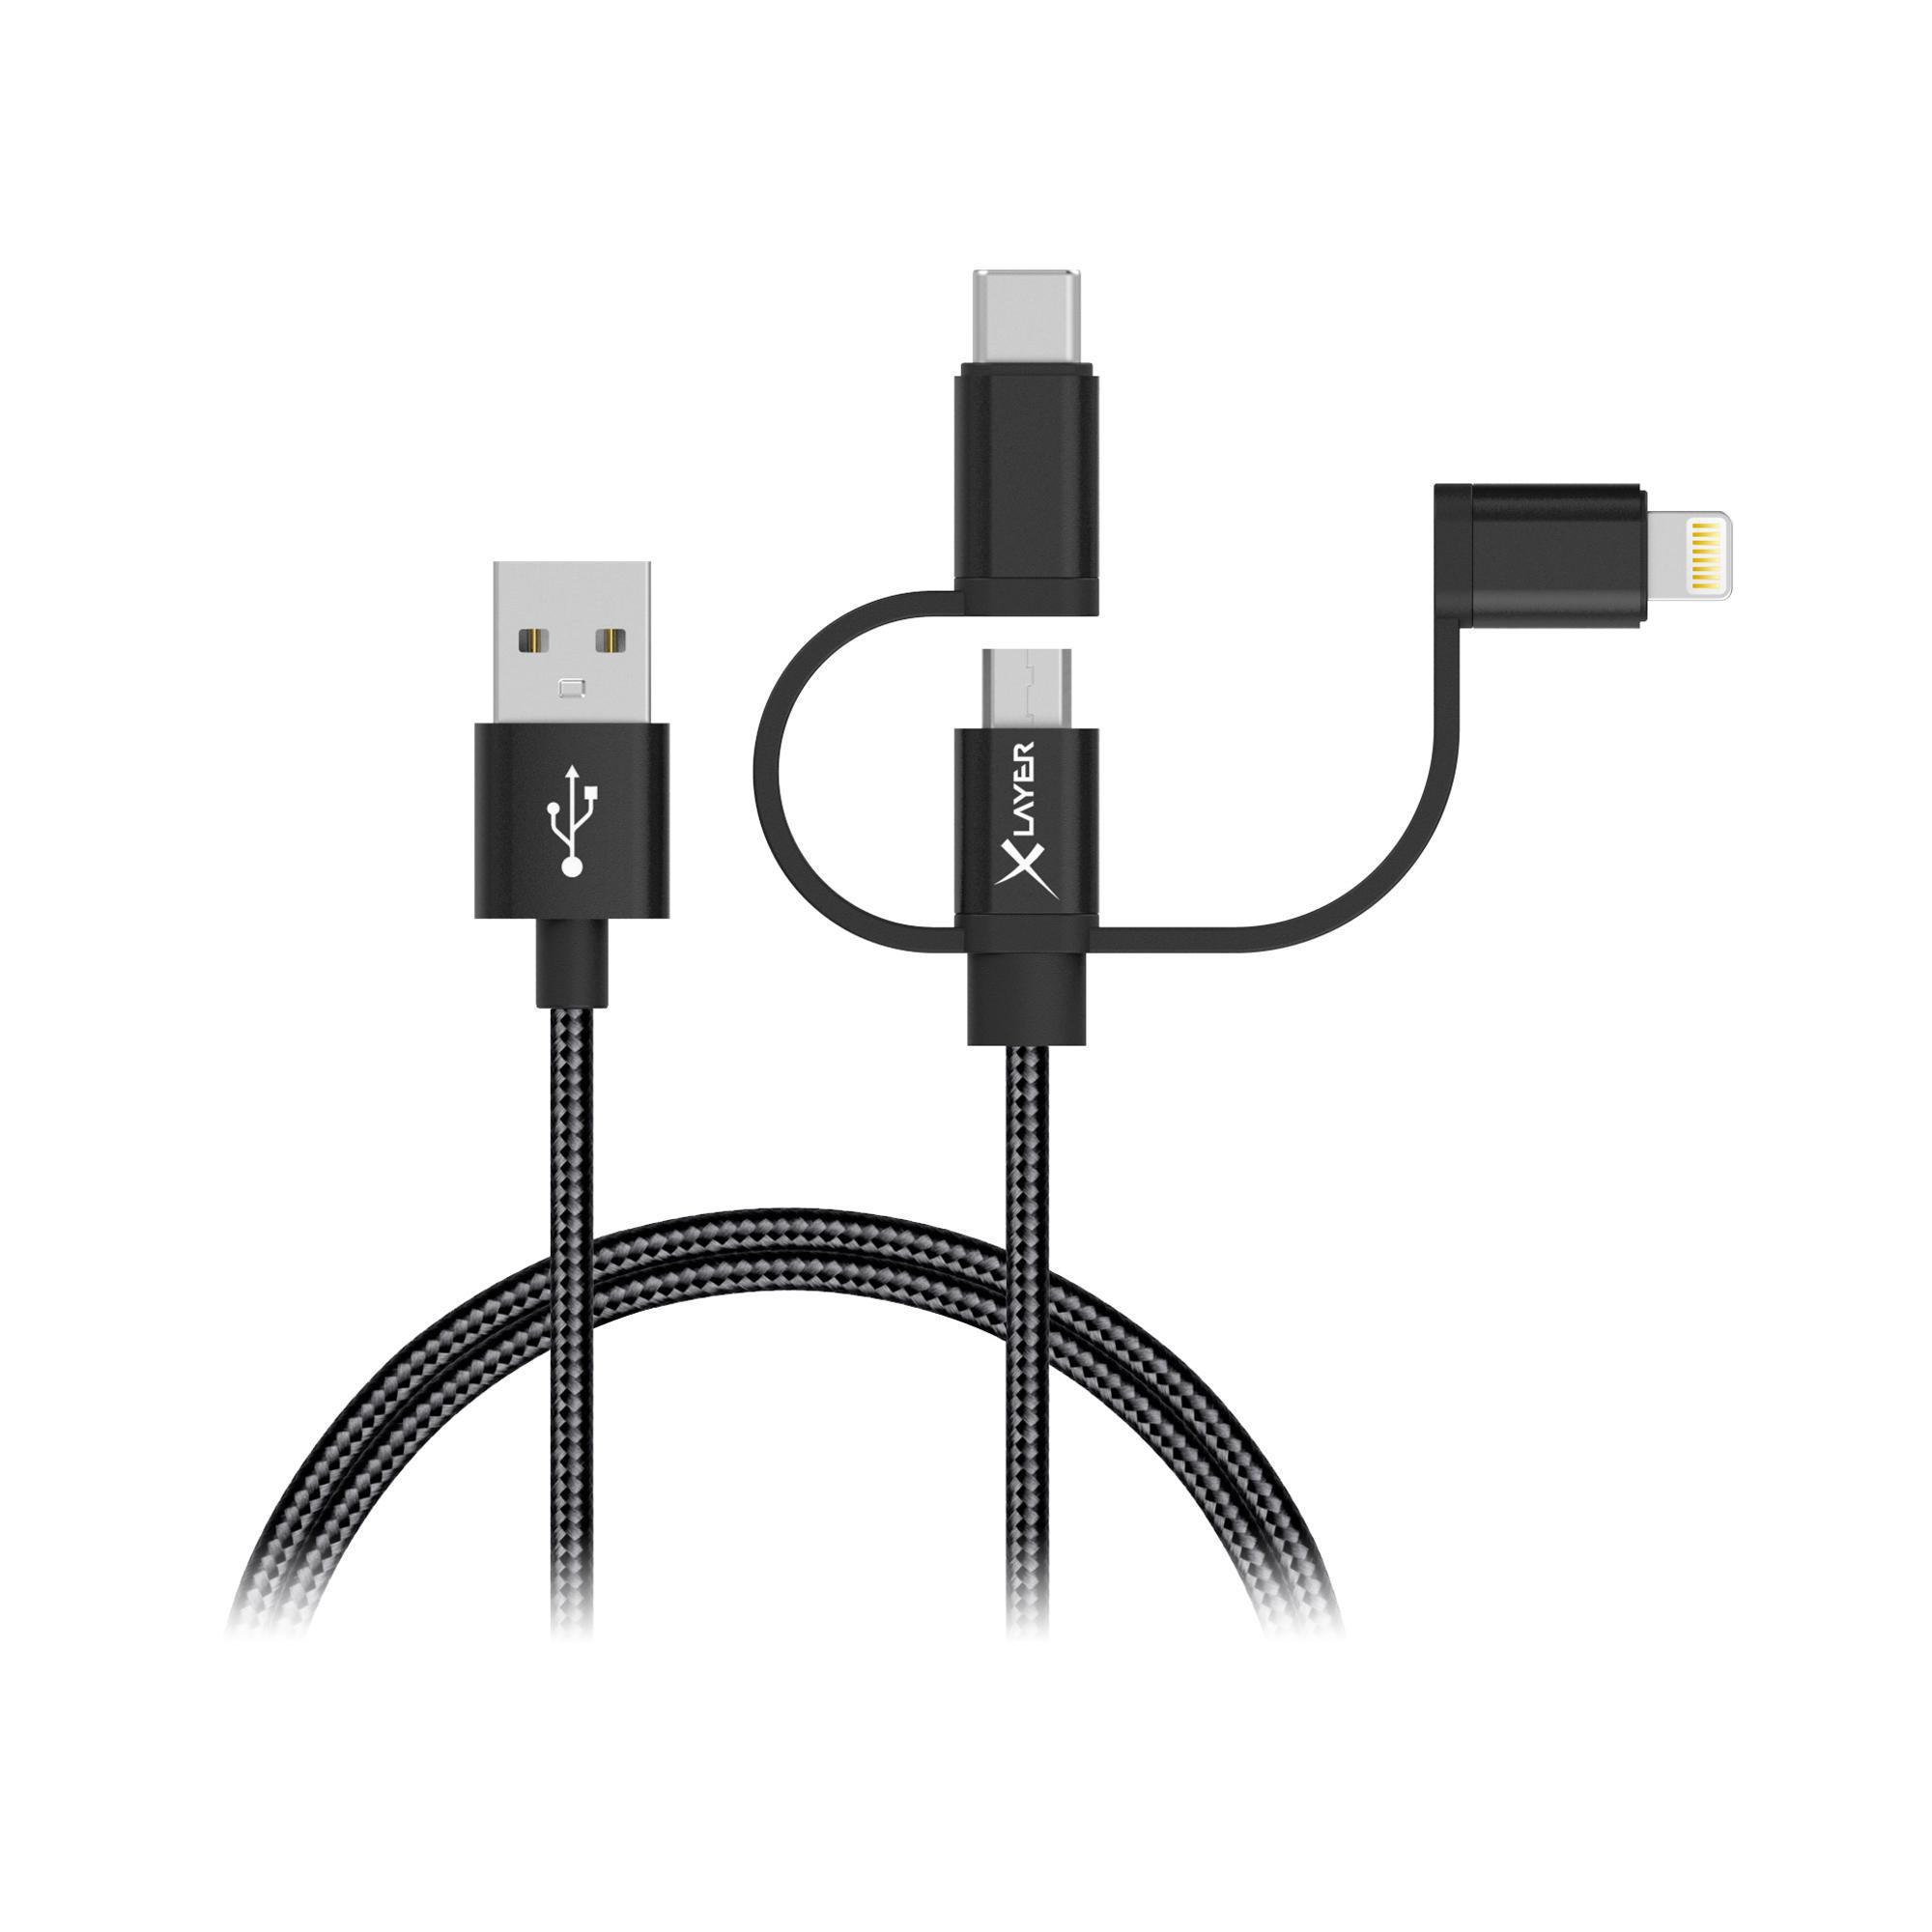 XLAYER Kabel PREMIUM MFI 3-IN-1 m, & Schwarz 1 Micro-USB & Lightning, USB-C Ladekabel